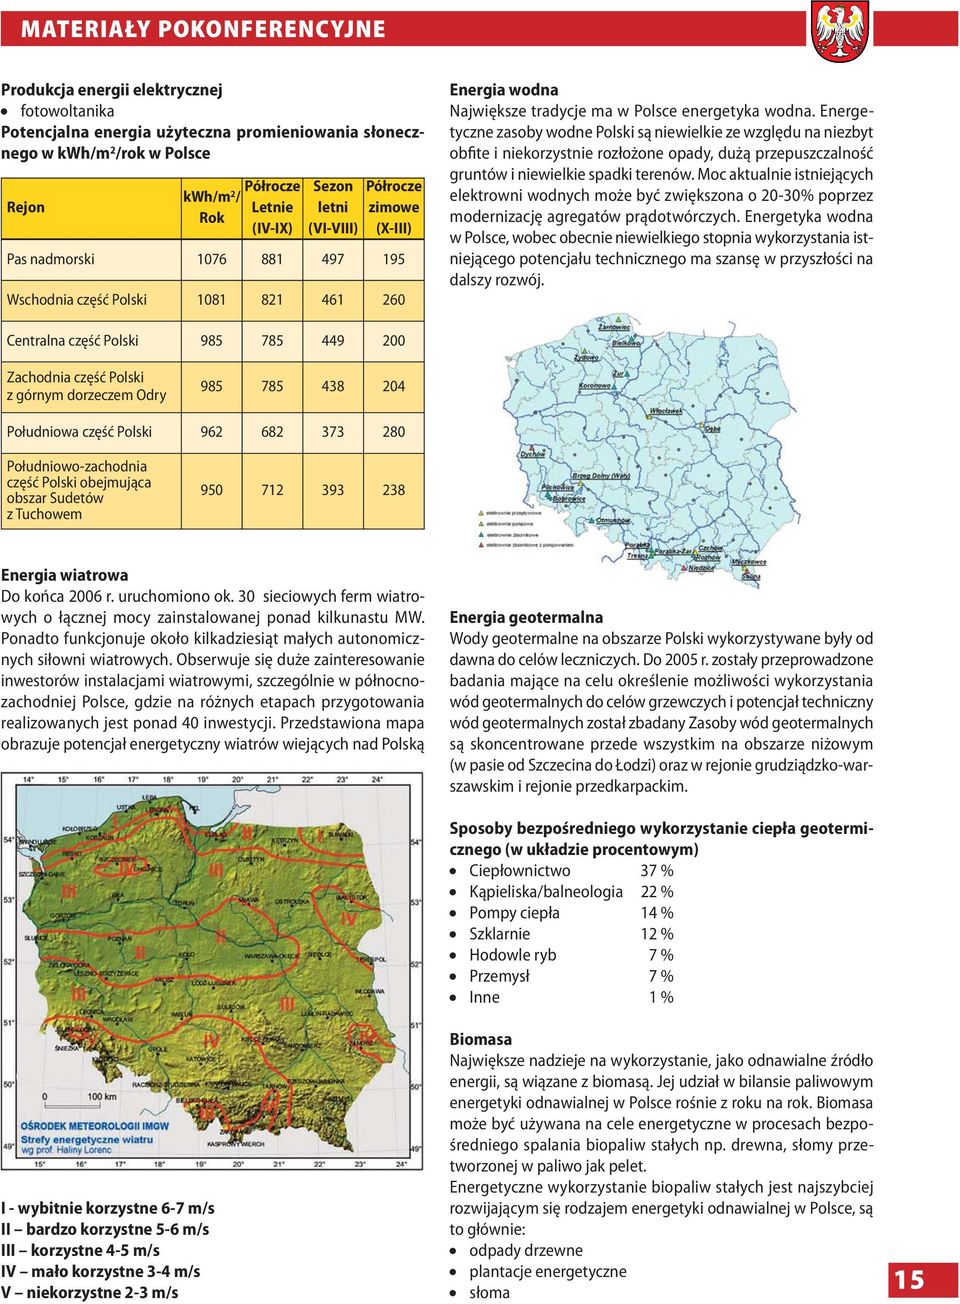 Energetyczne zasoby wodne Polski są niewielkie ze względu na niezbyt obfite i niekorzystnie rozłożone opady, dużą przepuszczalność gruntów i niewielkie spadki terenów.